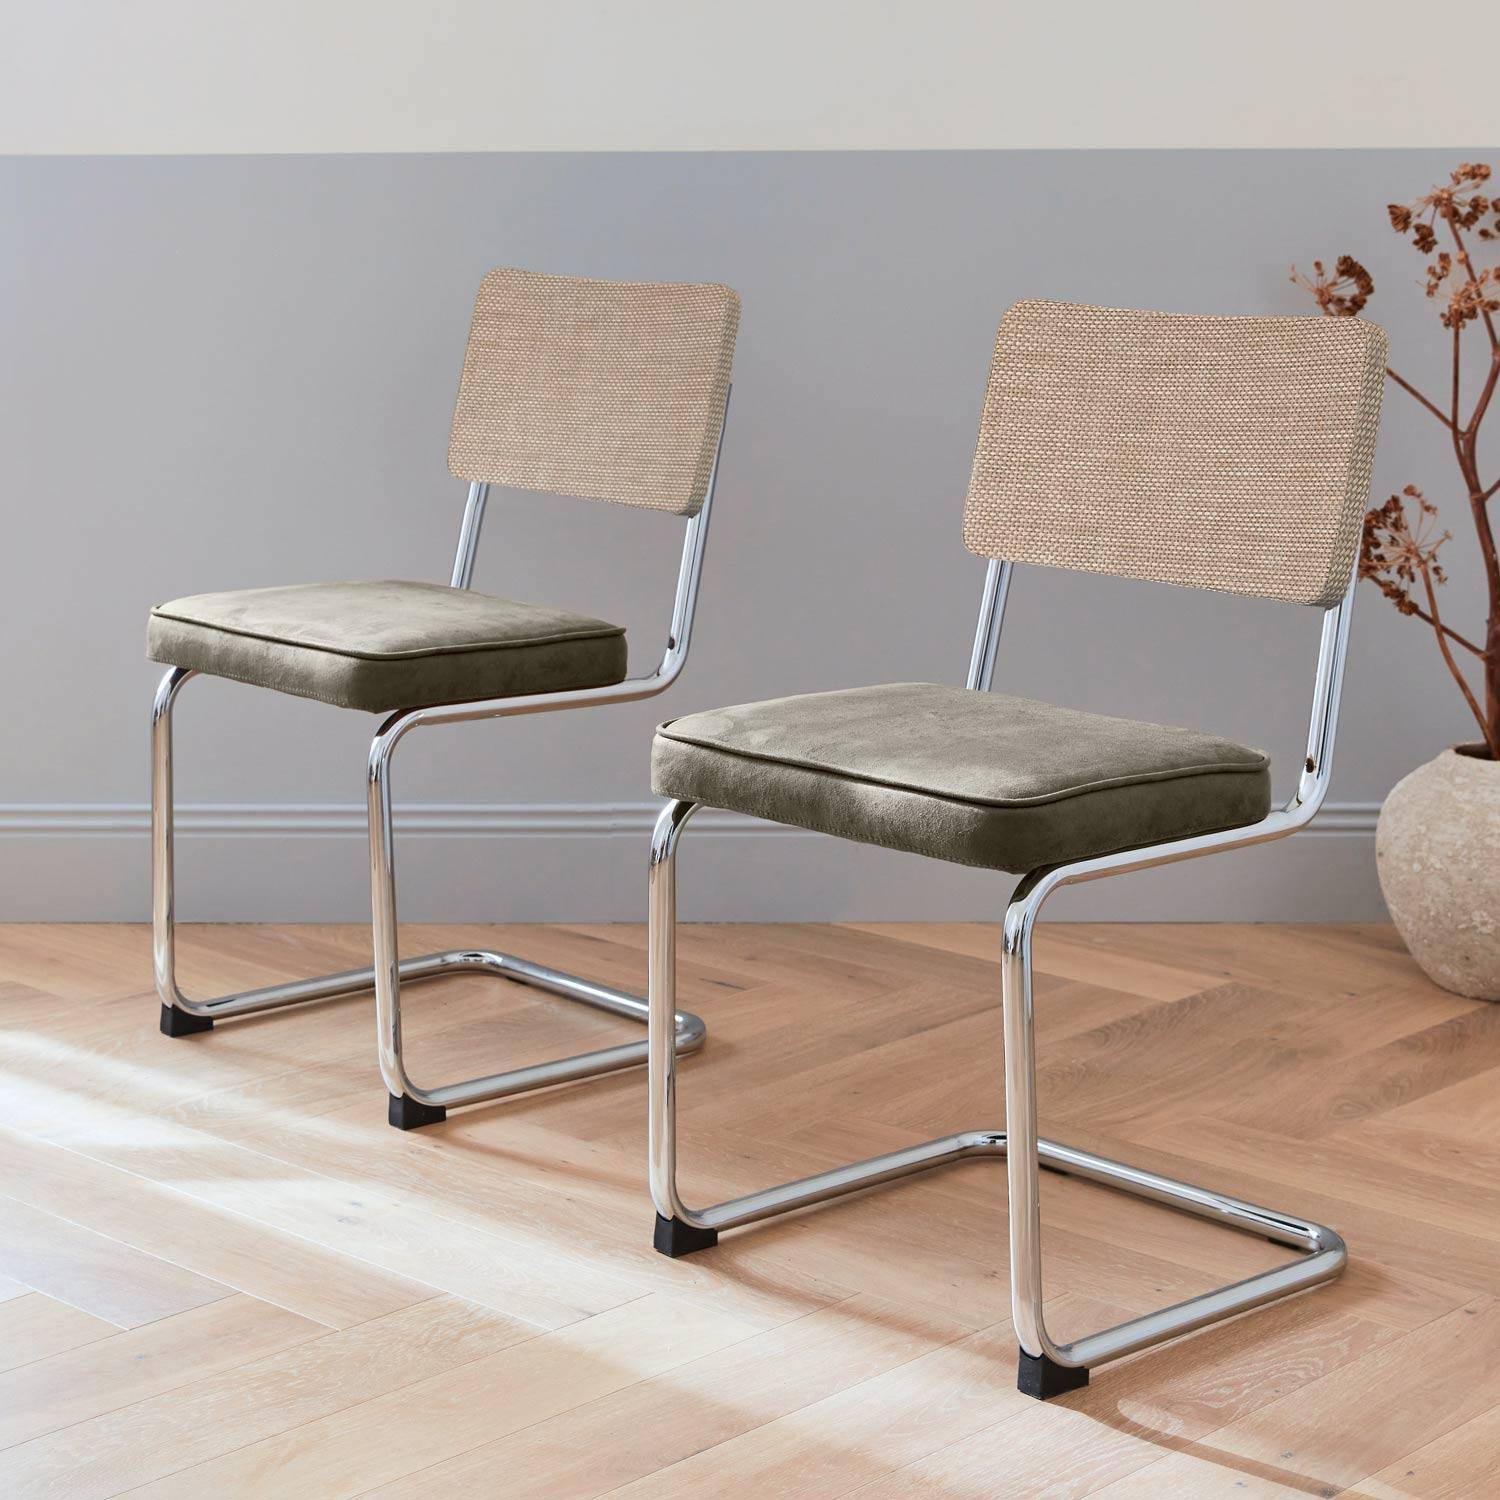 2 cadeiras cantilever - Maja - tecido caqui e resina com efeito rattan, 46 x 54,5 x 84,5 cm Photo1